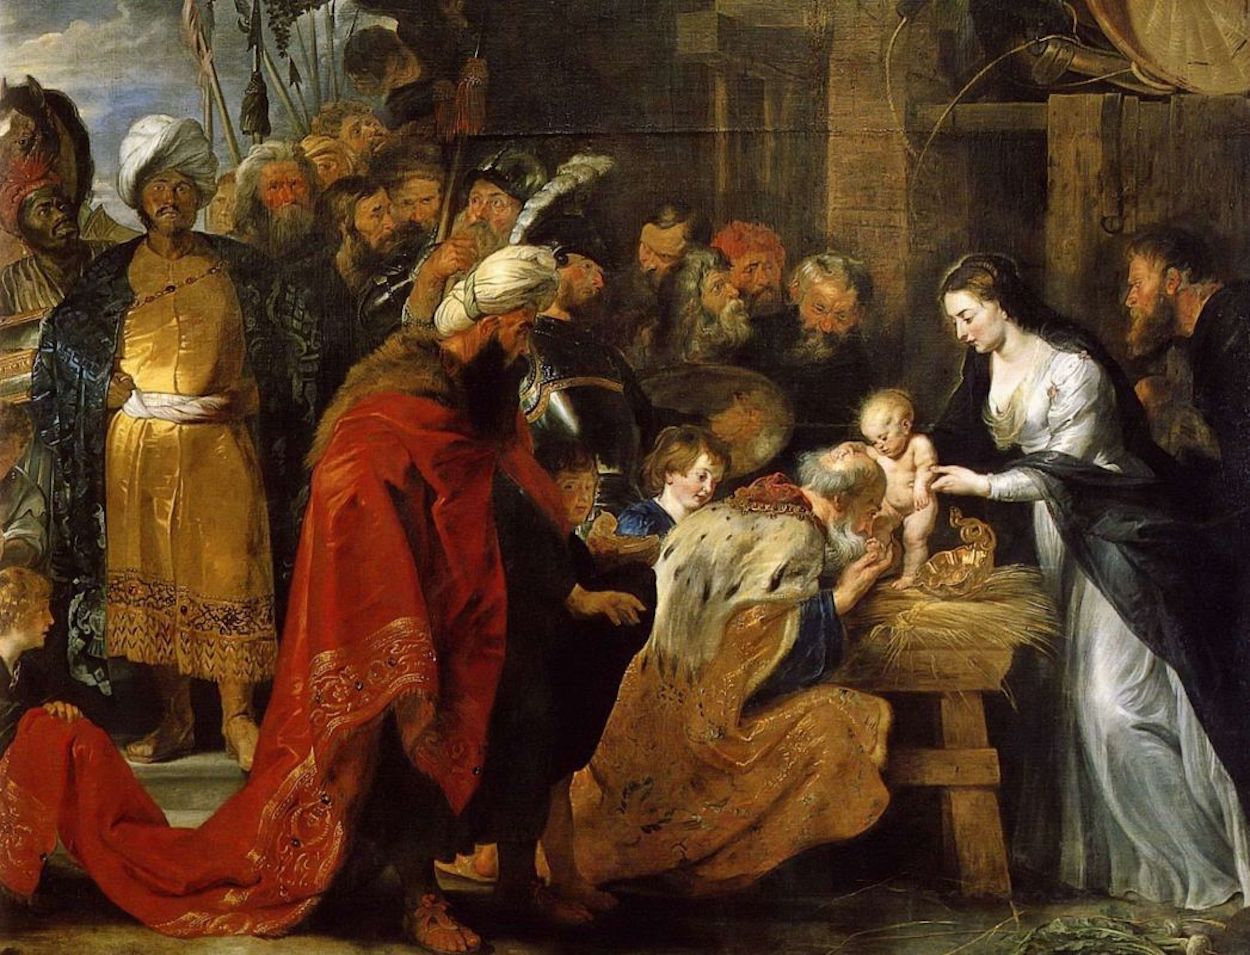 Поклонение волхвов by Peter Paul Rubens - 1616-1617 - 251 × 338 см 